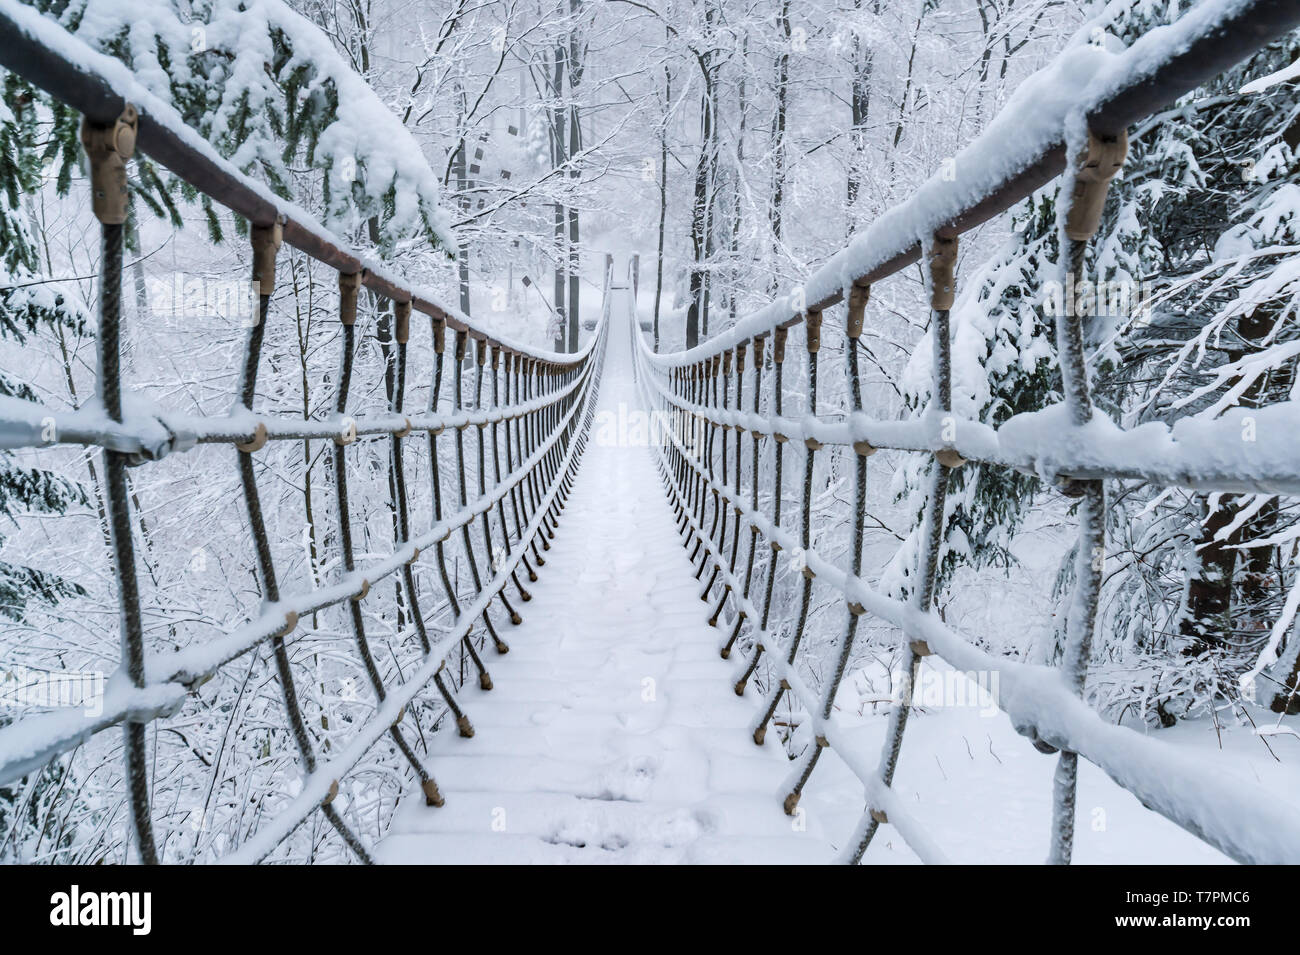 Im verschneiten Winterwald hängt eine Seilbrücke. Verschneite Tannen säumen den Weg. Brücke von den Rothaarsteig im Sauerland, Deutschland. Stockfoto